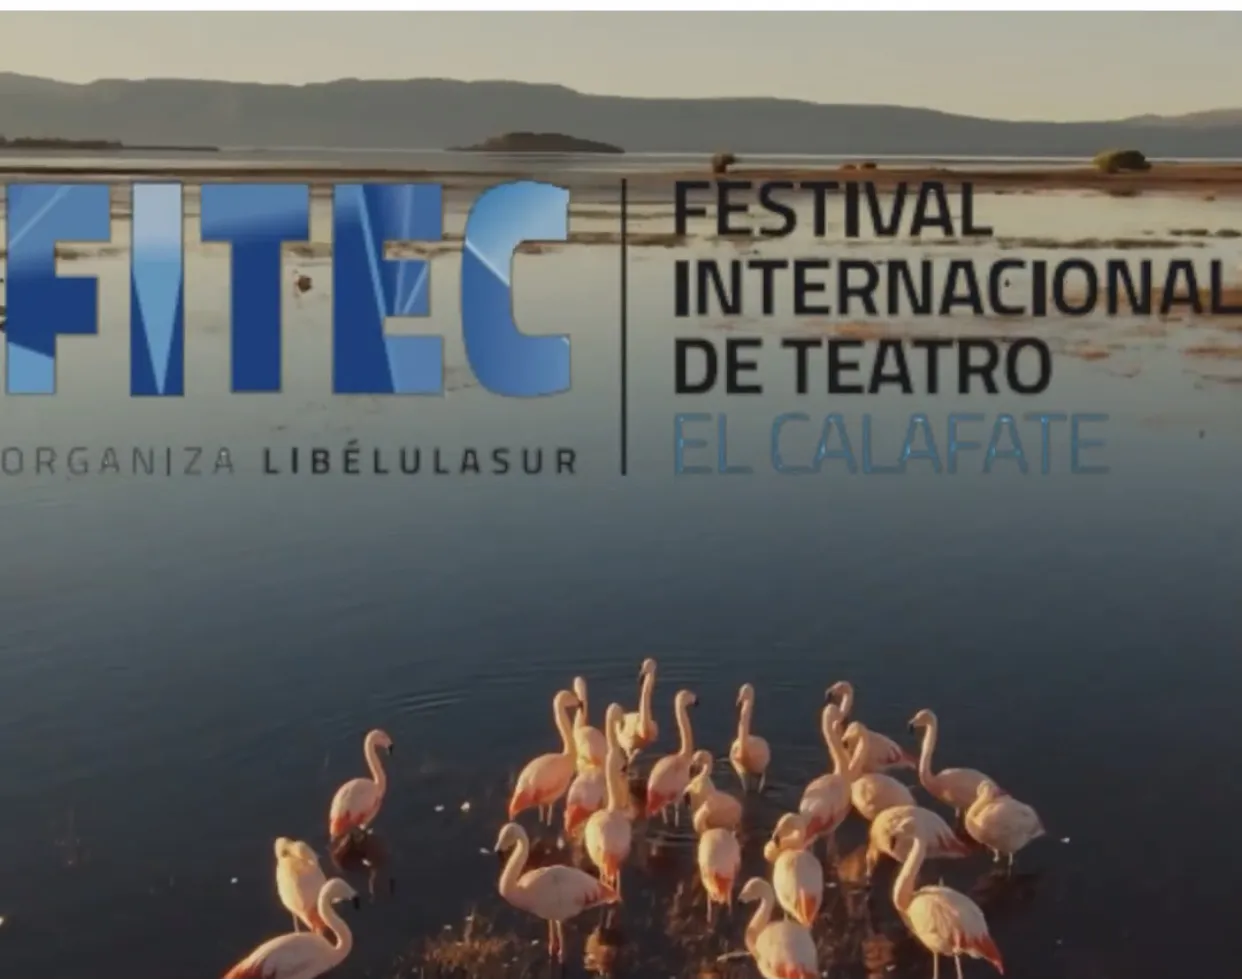 noticiaspuertosantacruz.com.ar - Imagen extraida de: https://ahoracalafate.com.ar//contenido/22937/hoy-comienza-el-festival-internacional-de-teatro-de-el-calafate-mira-el-cronogra